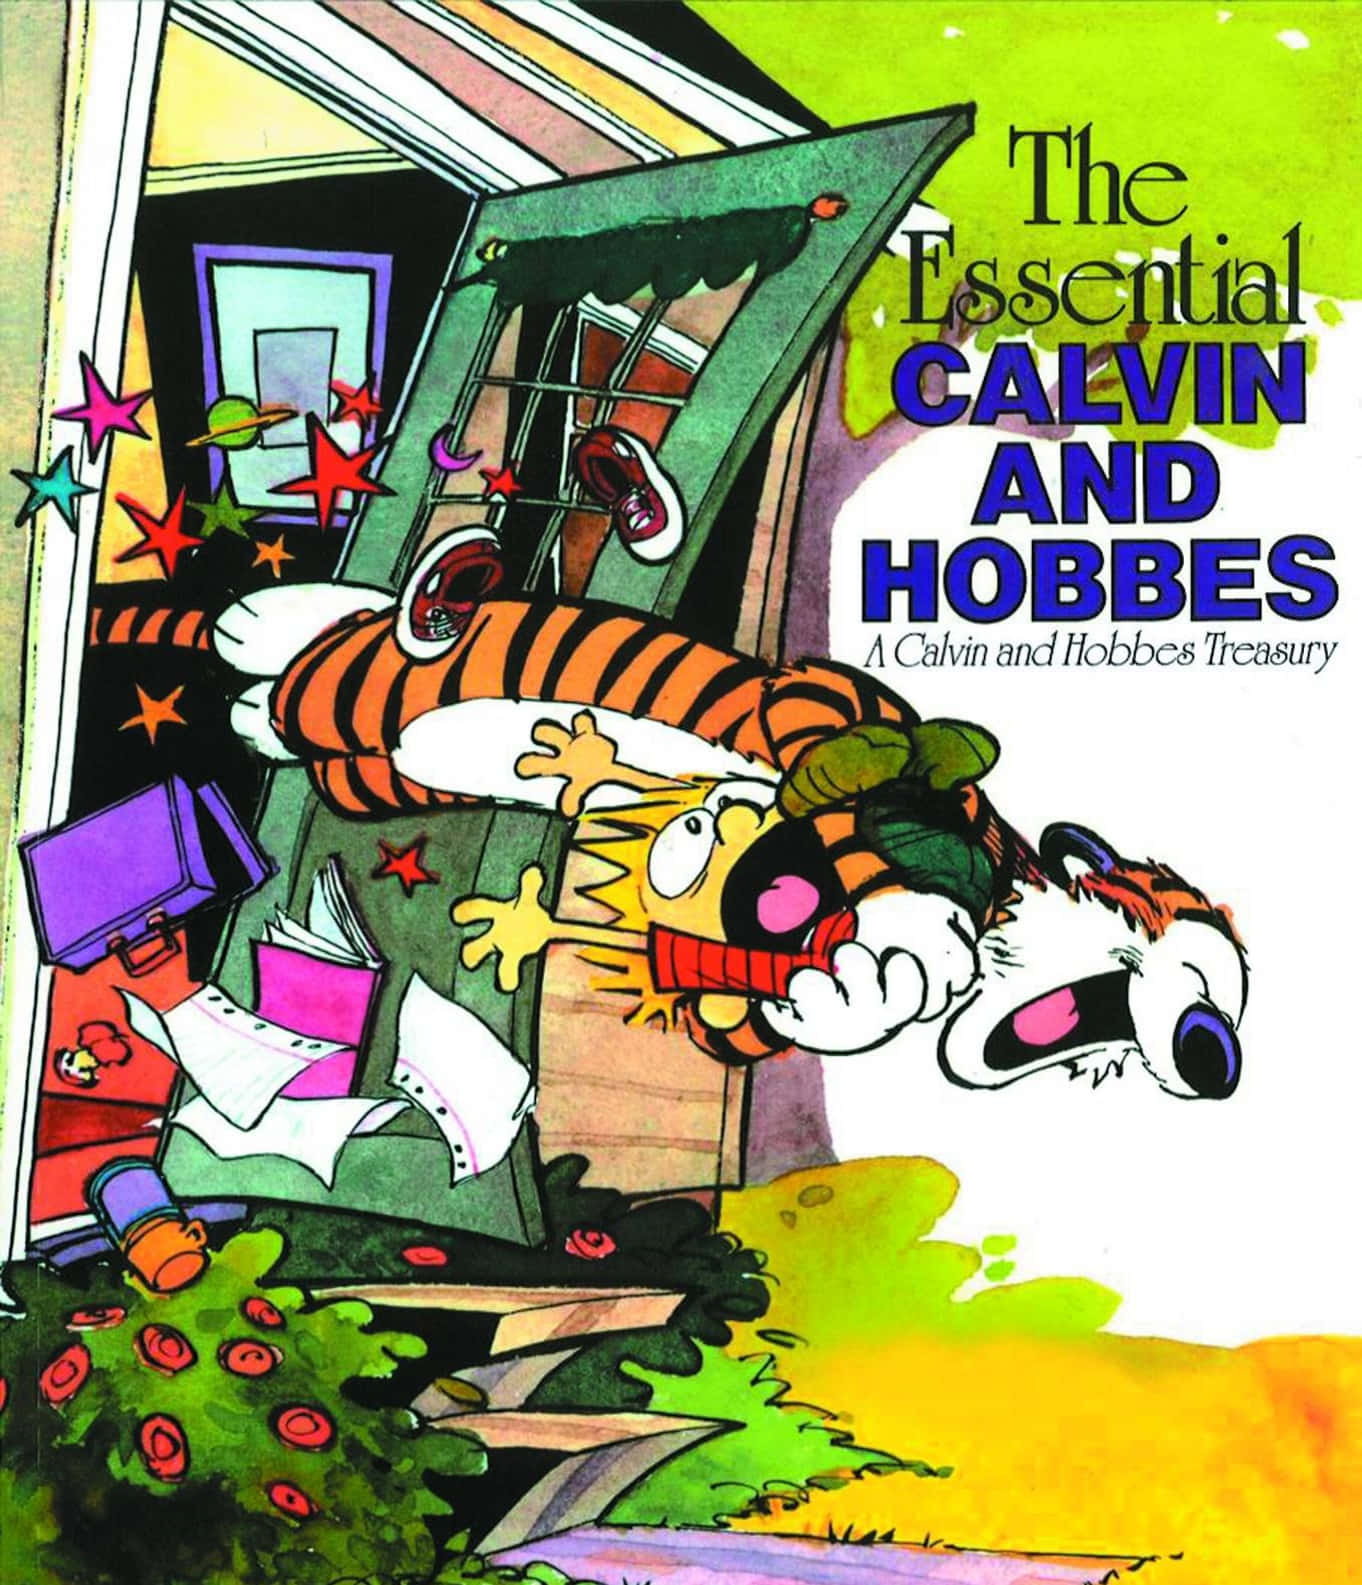 Cartazengraçado Da Calvin E Hobbes Como Papel De Parede Do Computador Ou Celular.